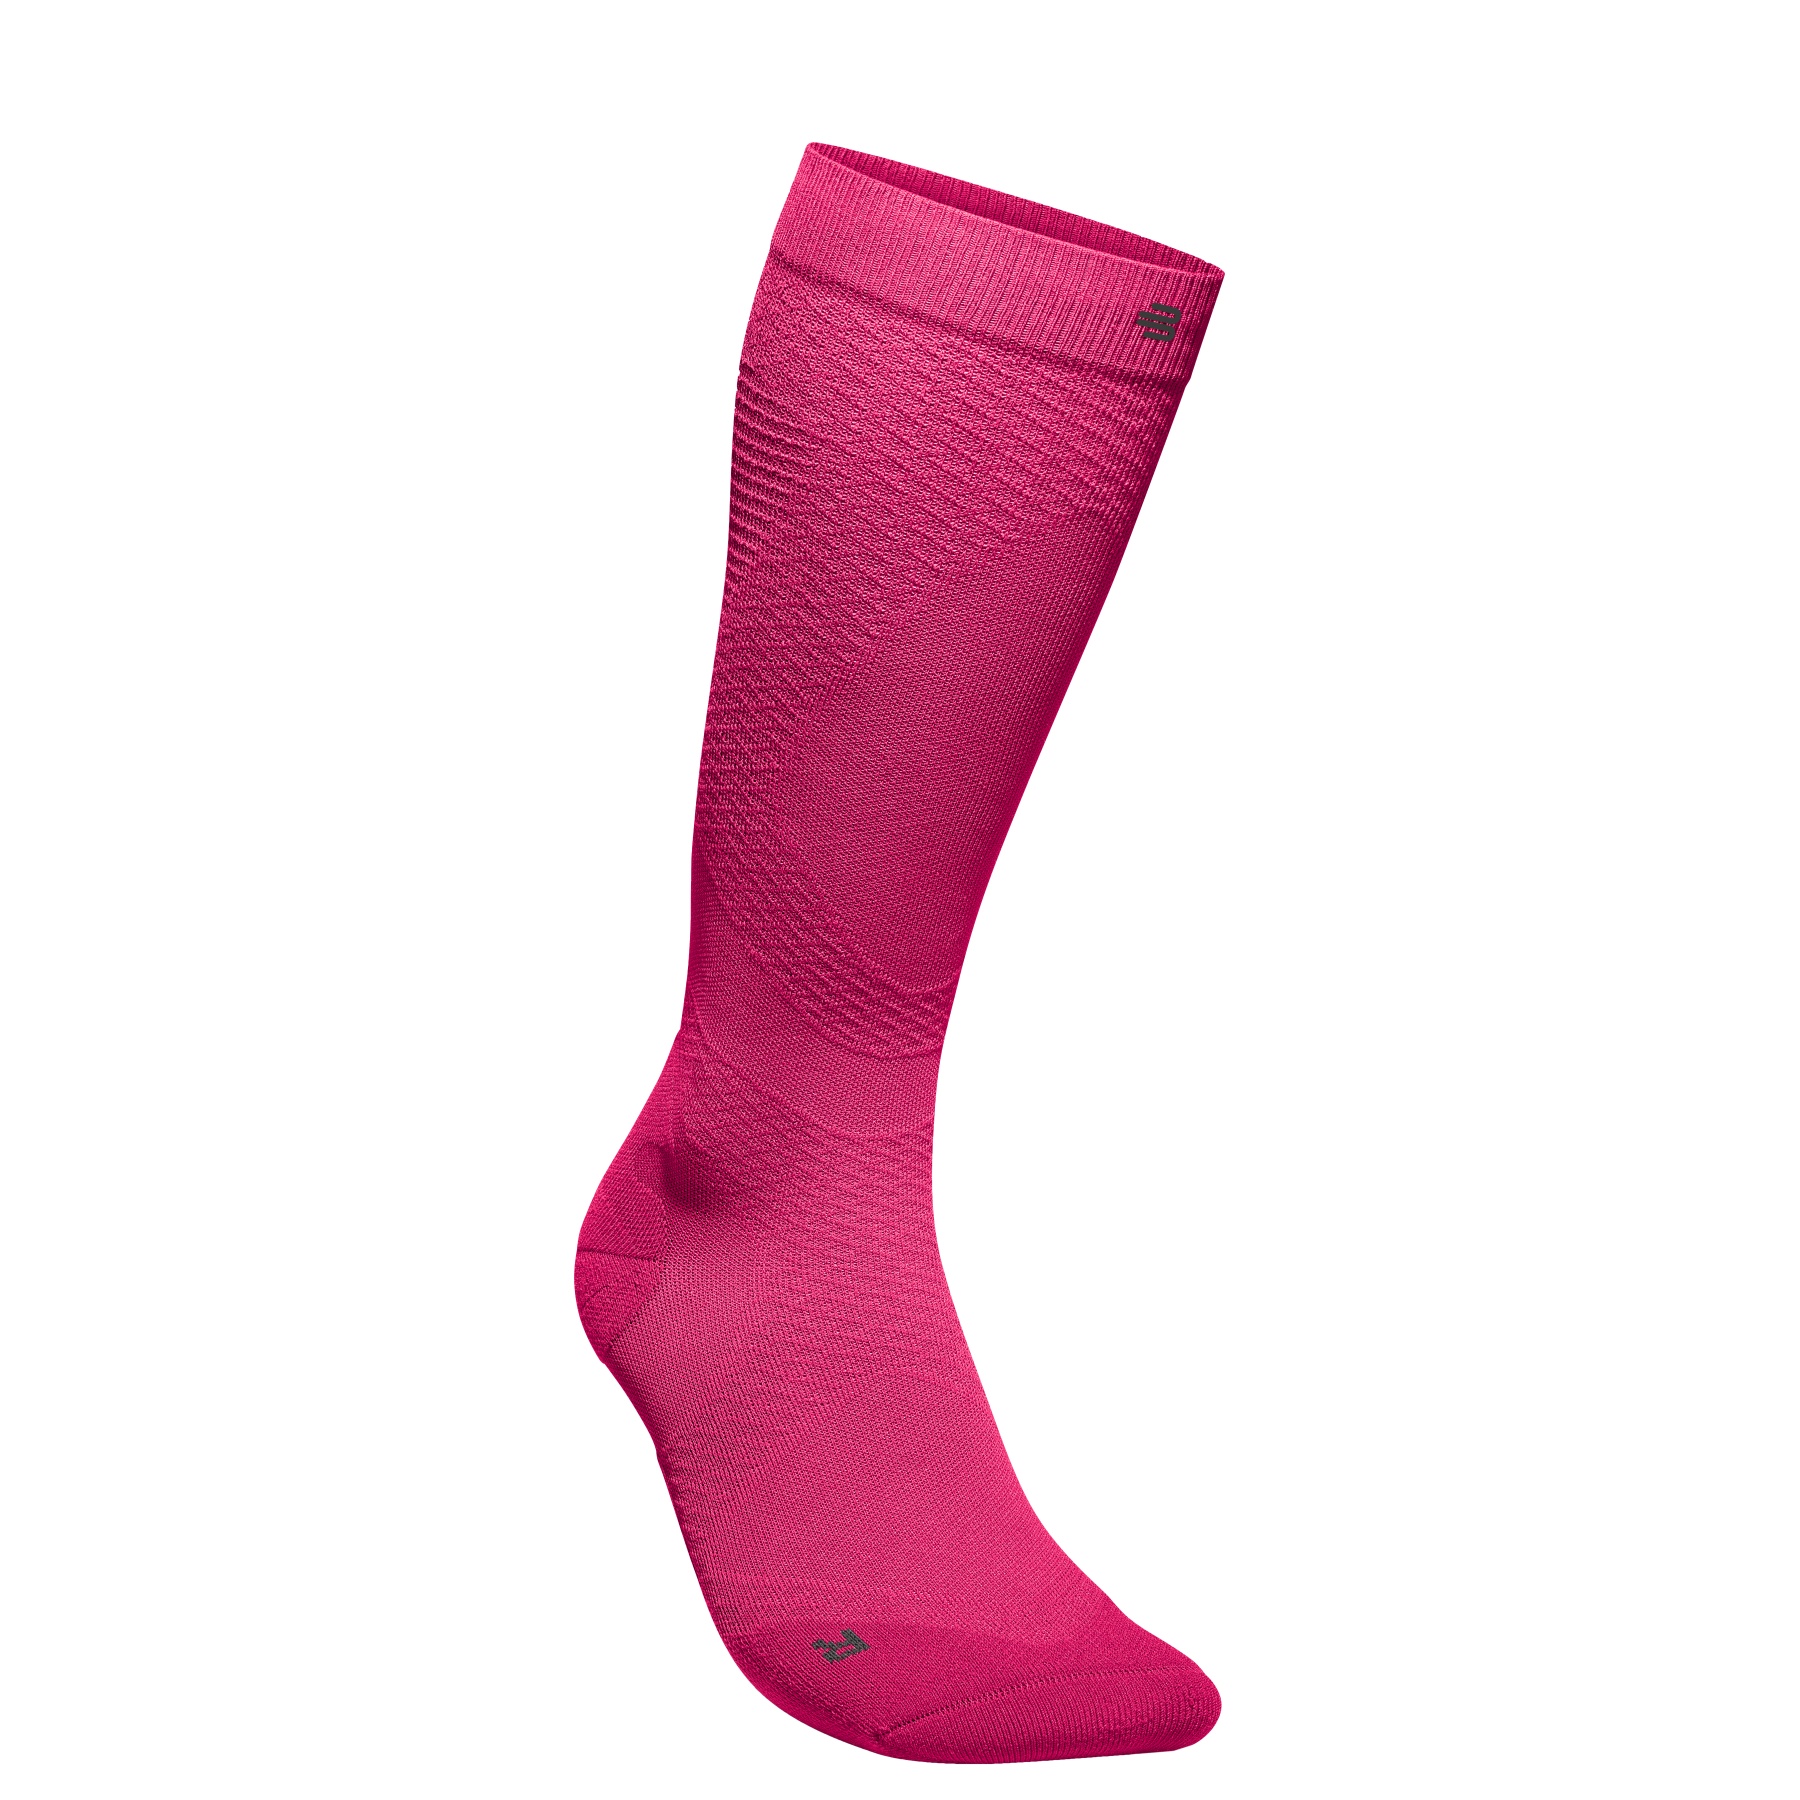 Produktbild von Bauerfeind Run Ultralight Kompressionssocken Herren - pitaya pink - M (36-41 cm)